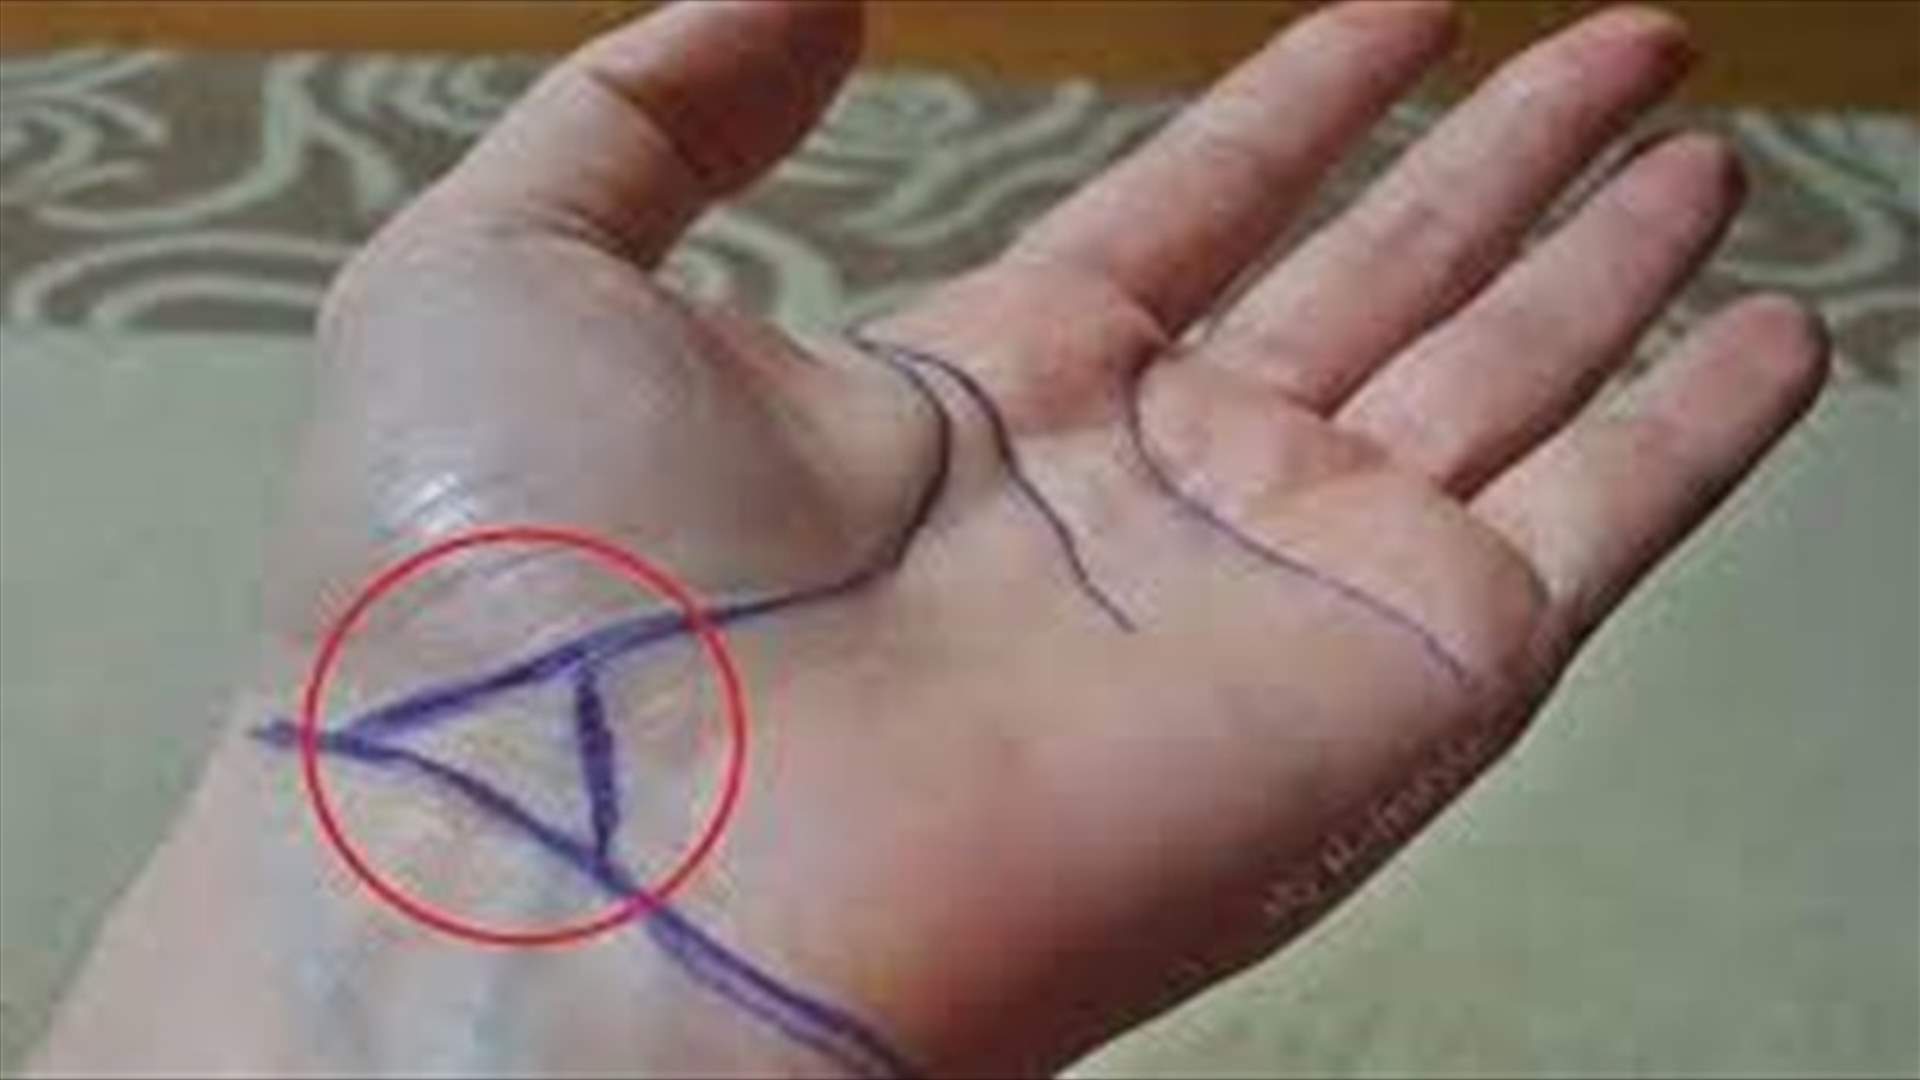 المثلث حول المعصم علامة مهمّة... إلى ماذا يرمز؟